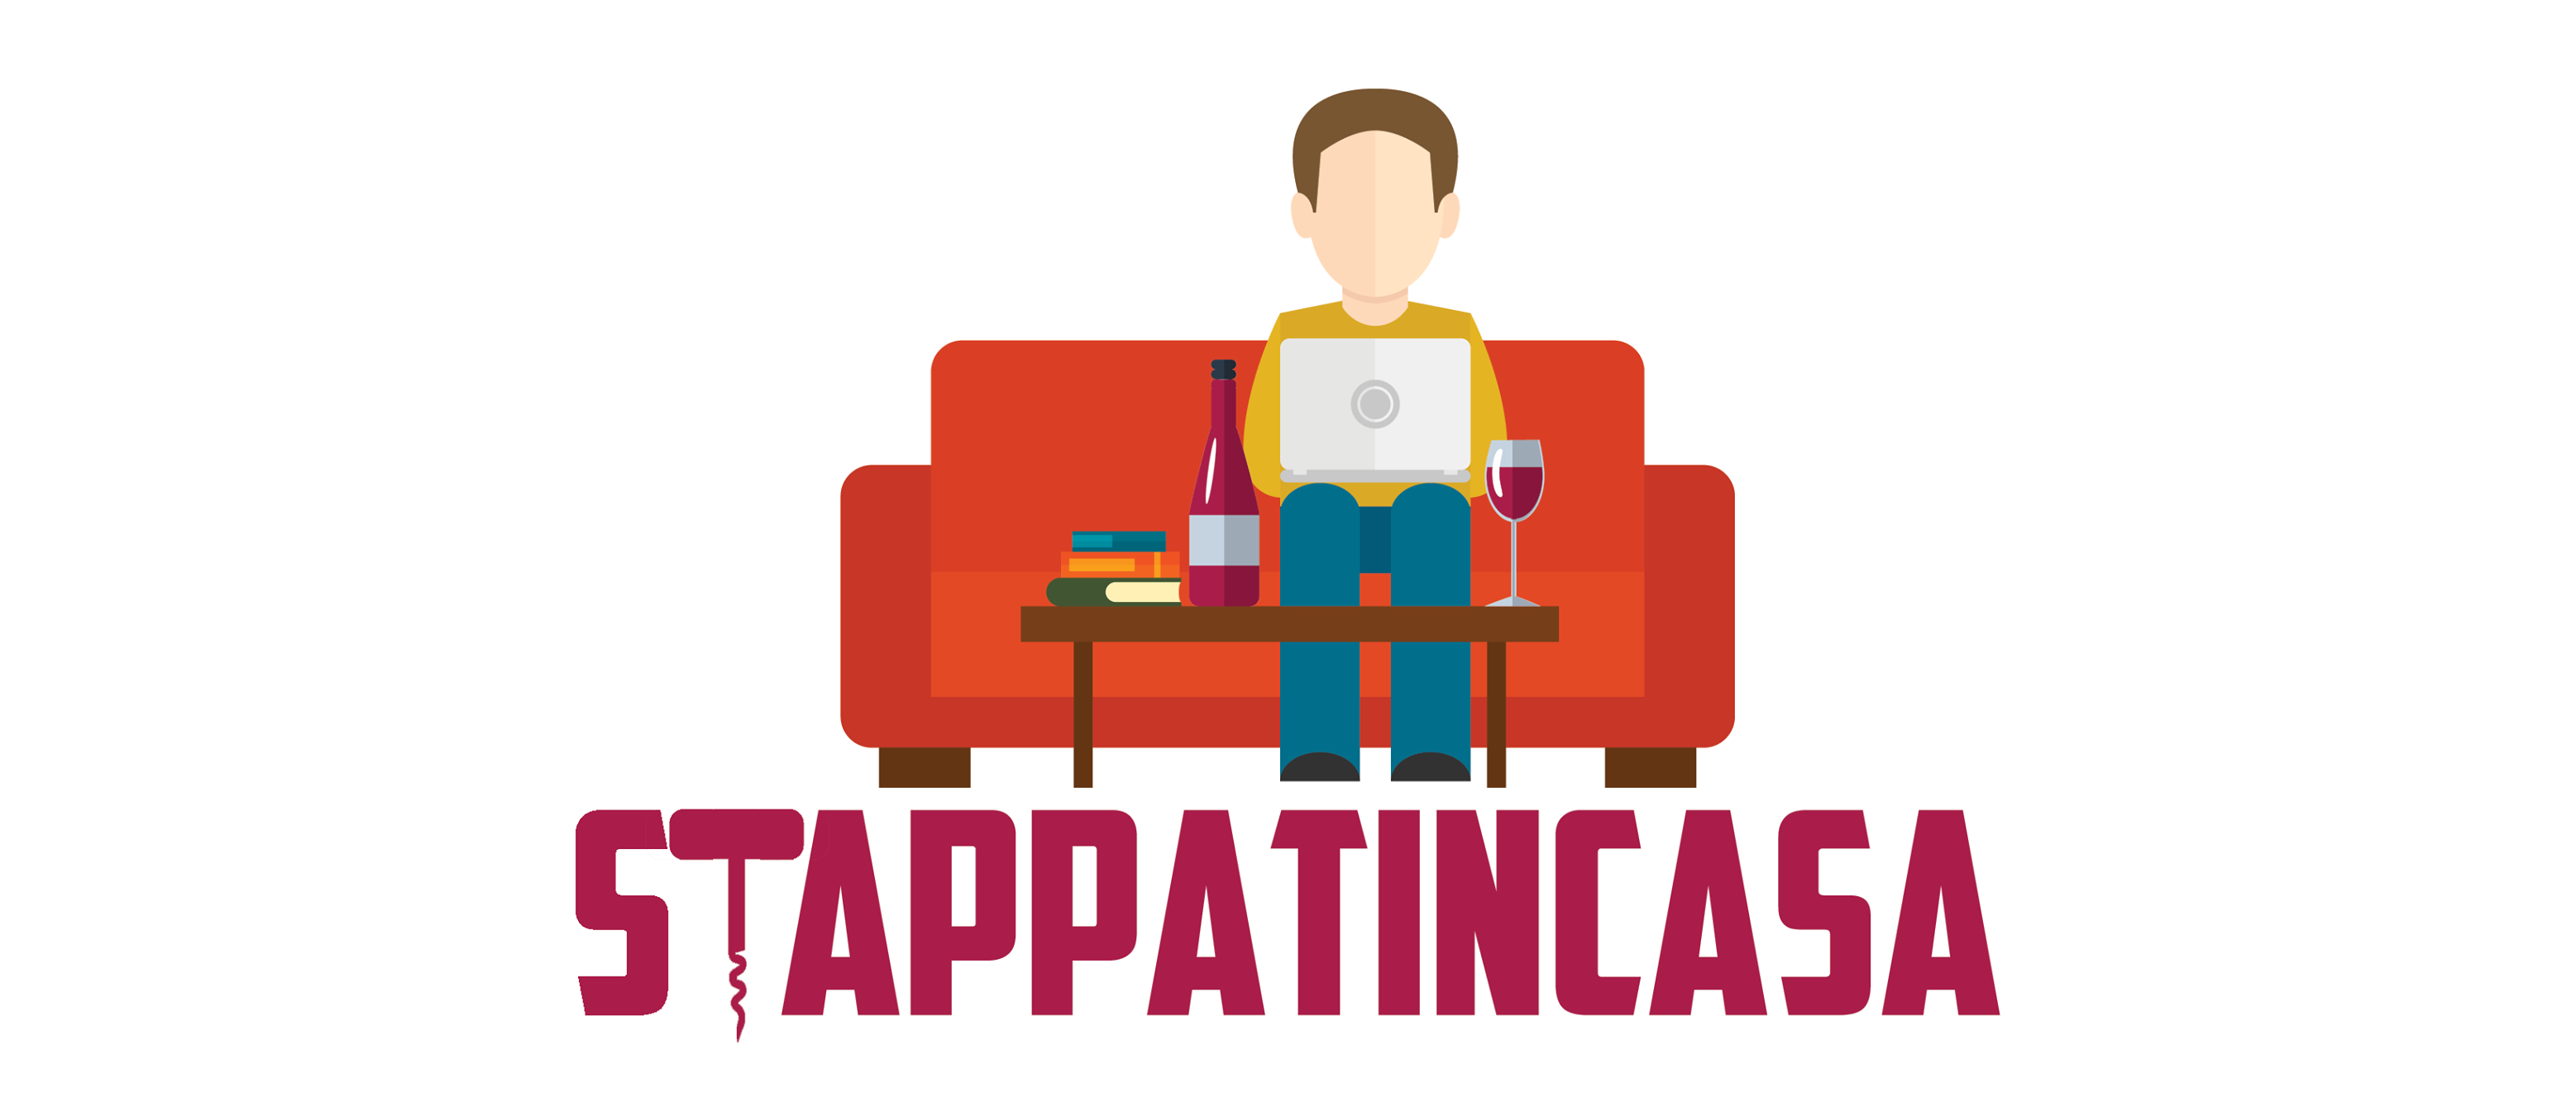 Stappatincasa, Luca Balbiano e i suoi “racconti di vino in lockdown”